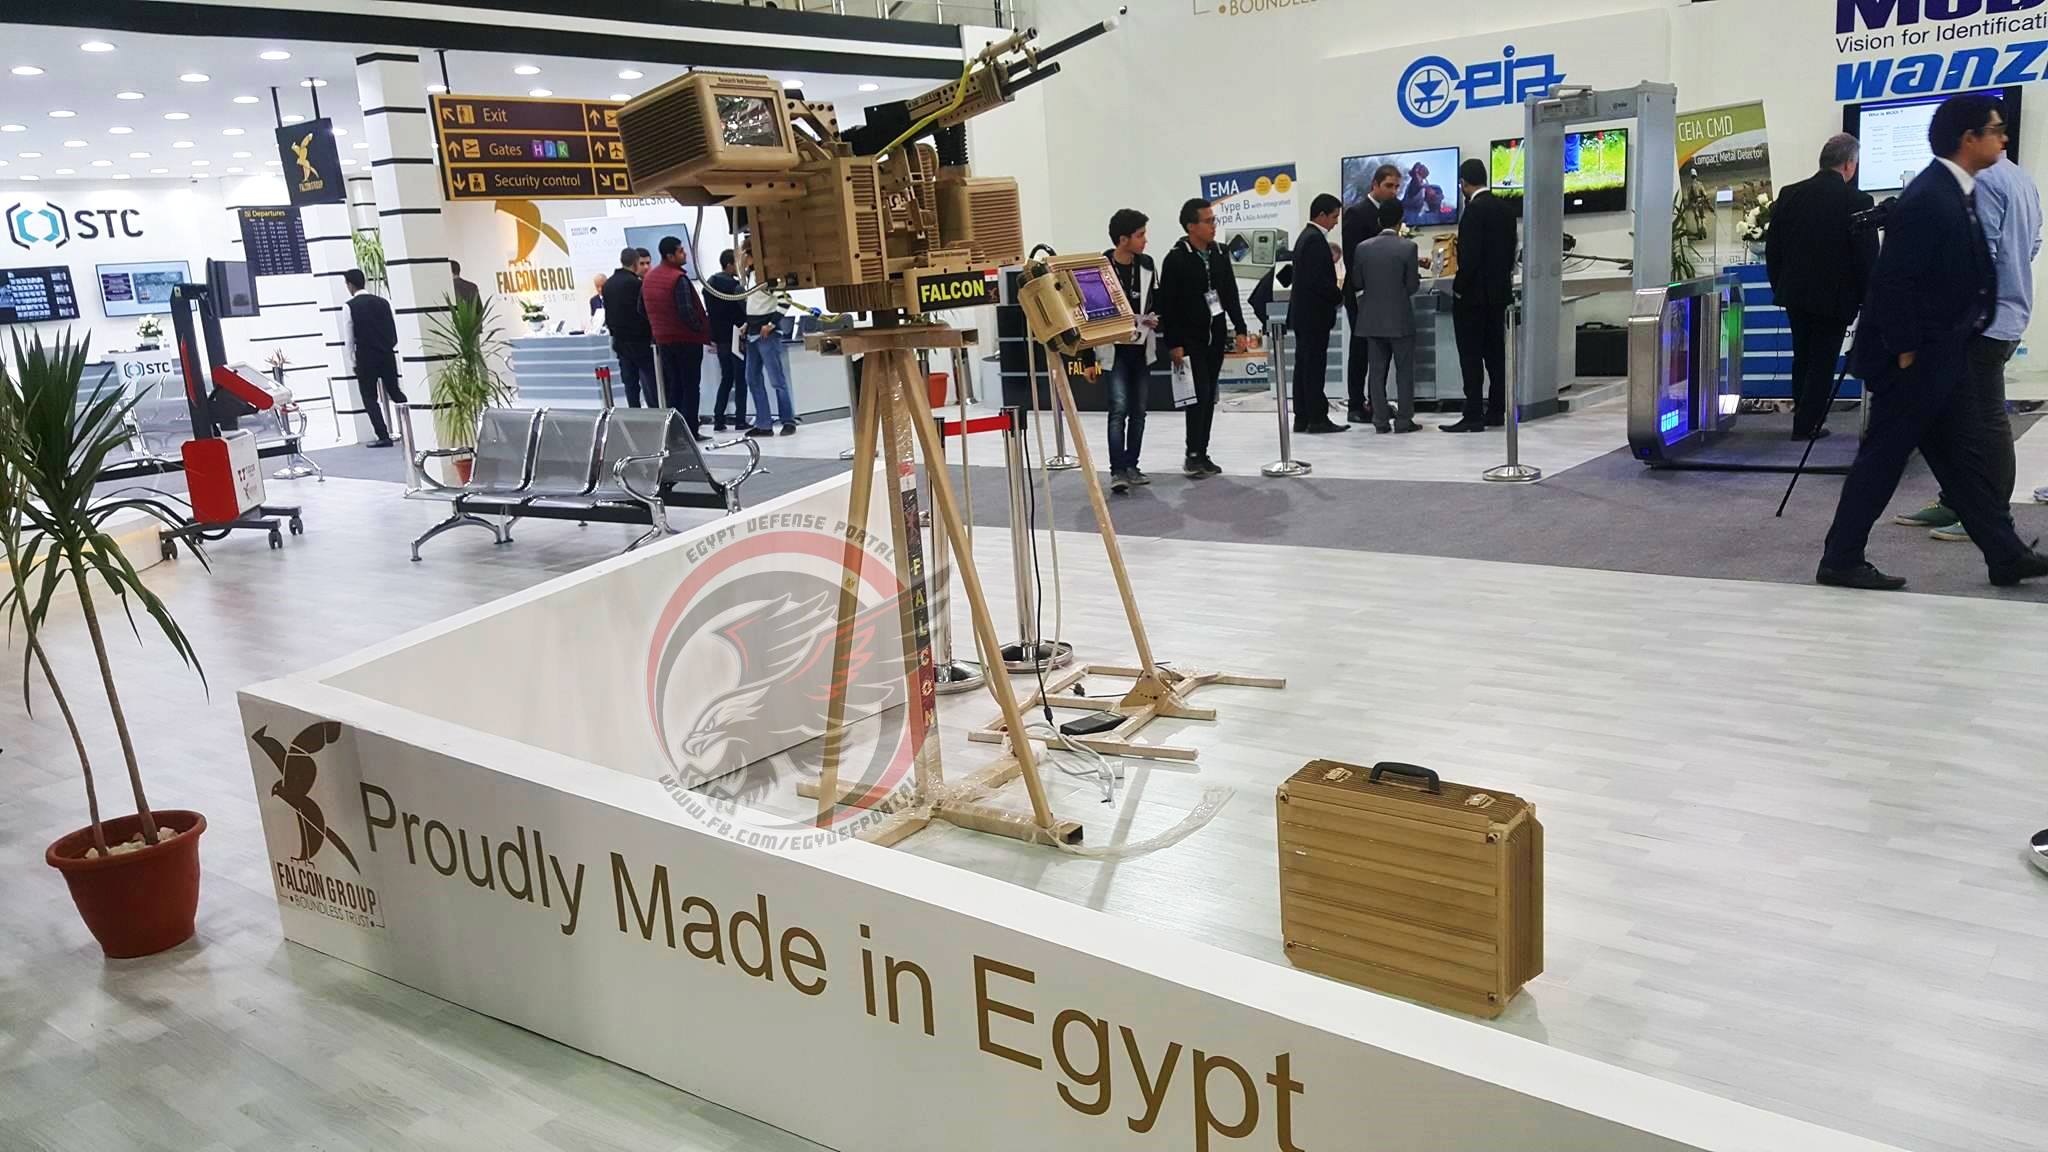  بالصور شركة قطاع خاص مصرية تصنع آليات مسيرة و ابراج غير مأهولة مزودة بمدفع رشاش 273947876